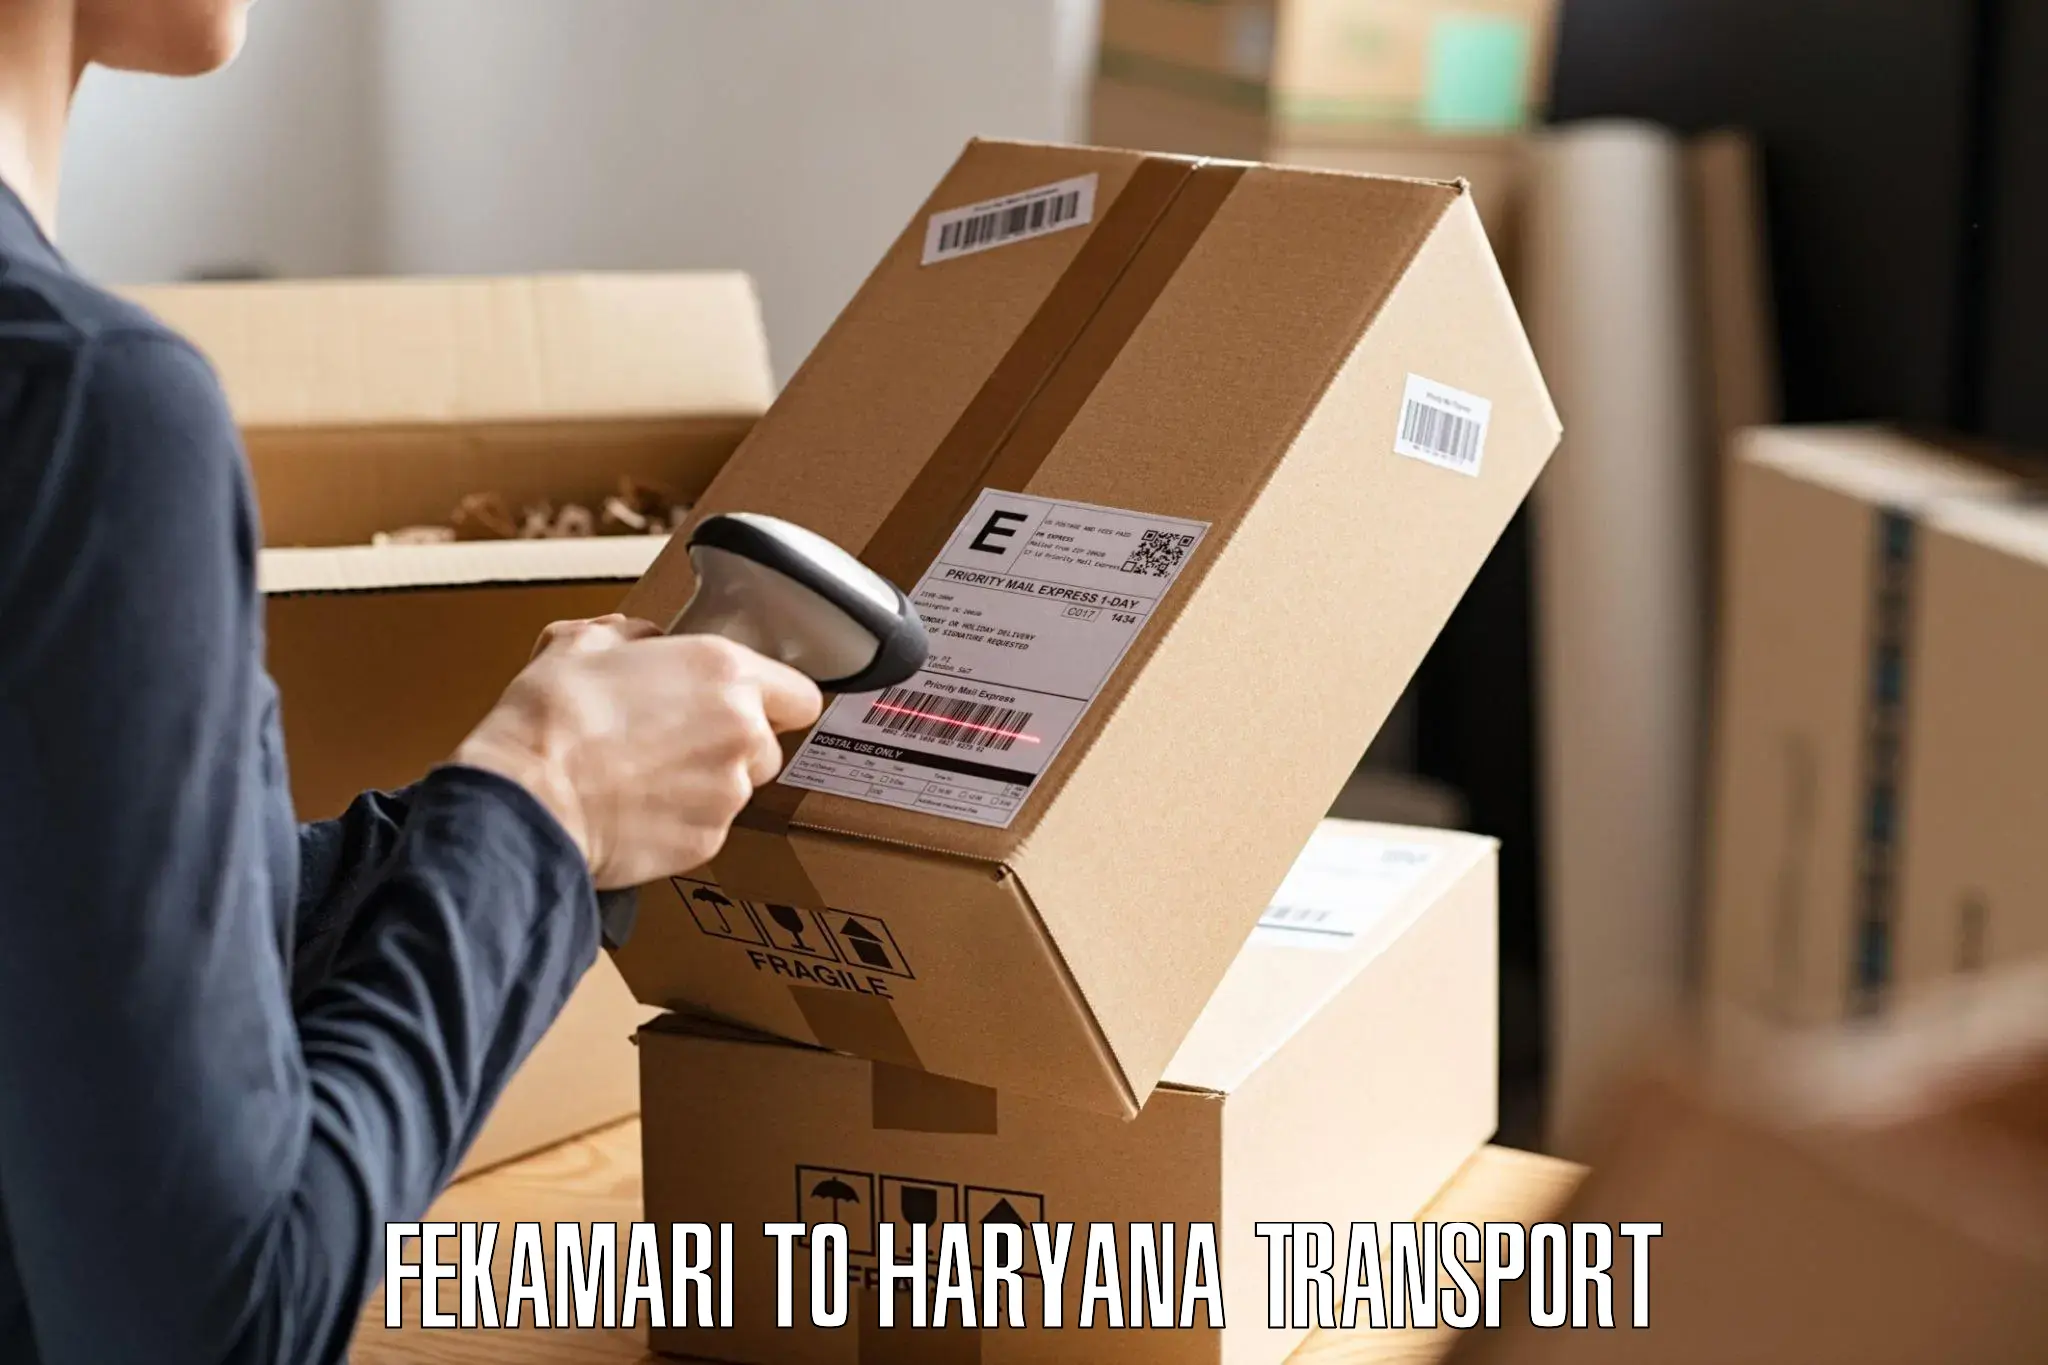 Shipping services Fekamari to Chaudhary Charan Singh Haryana Agricultural University Hisar